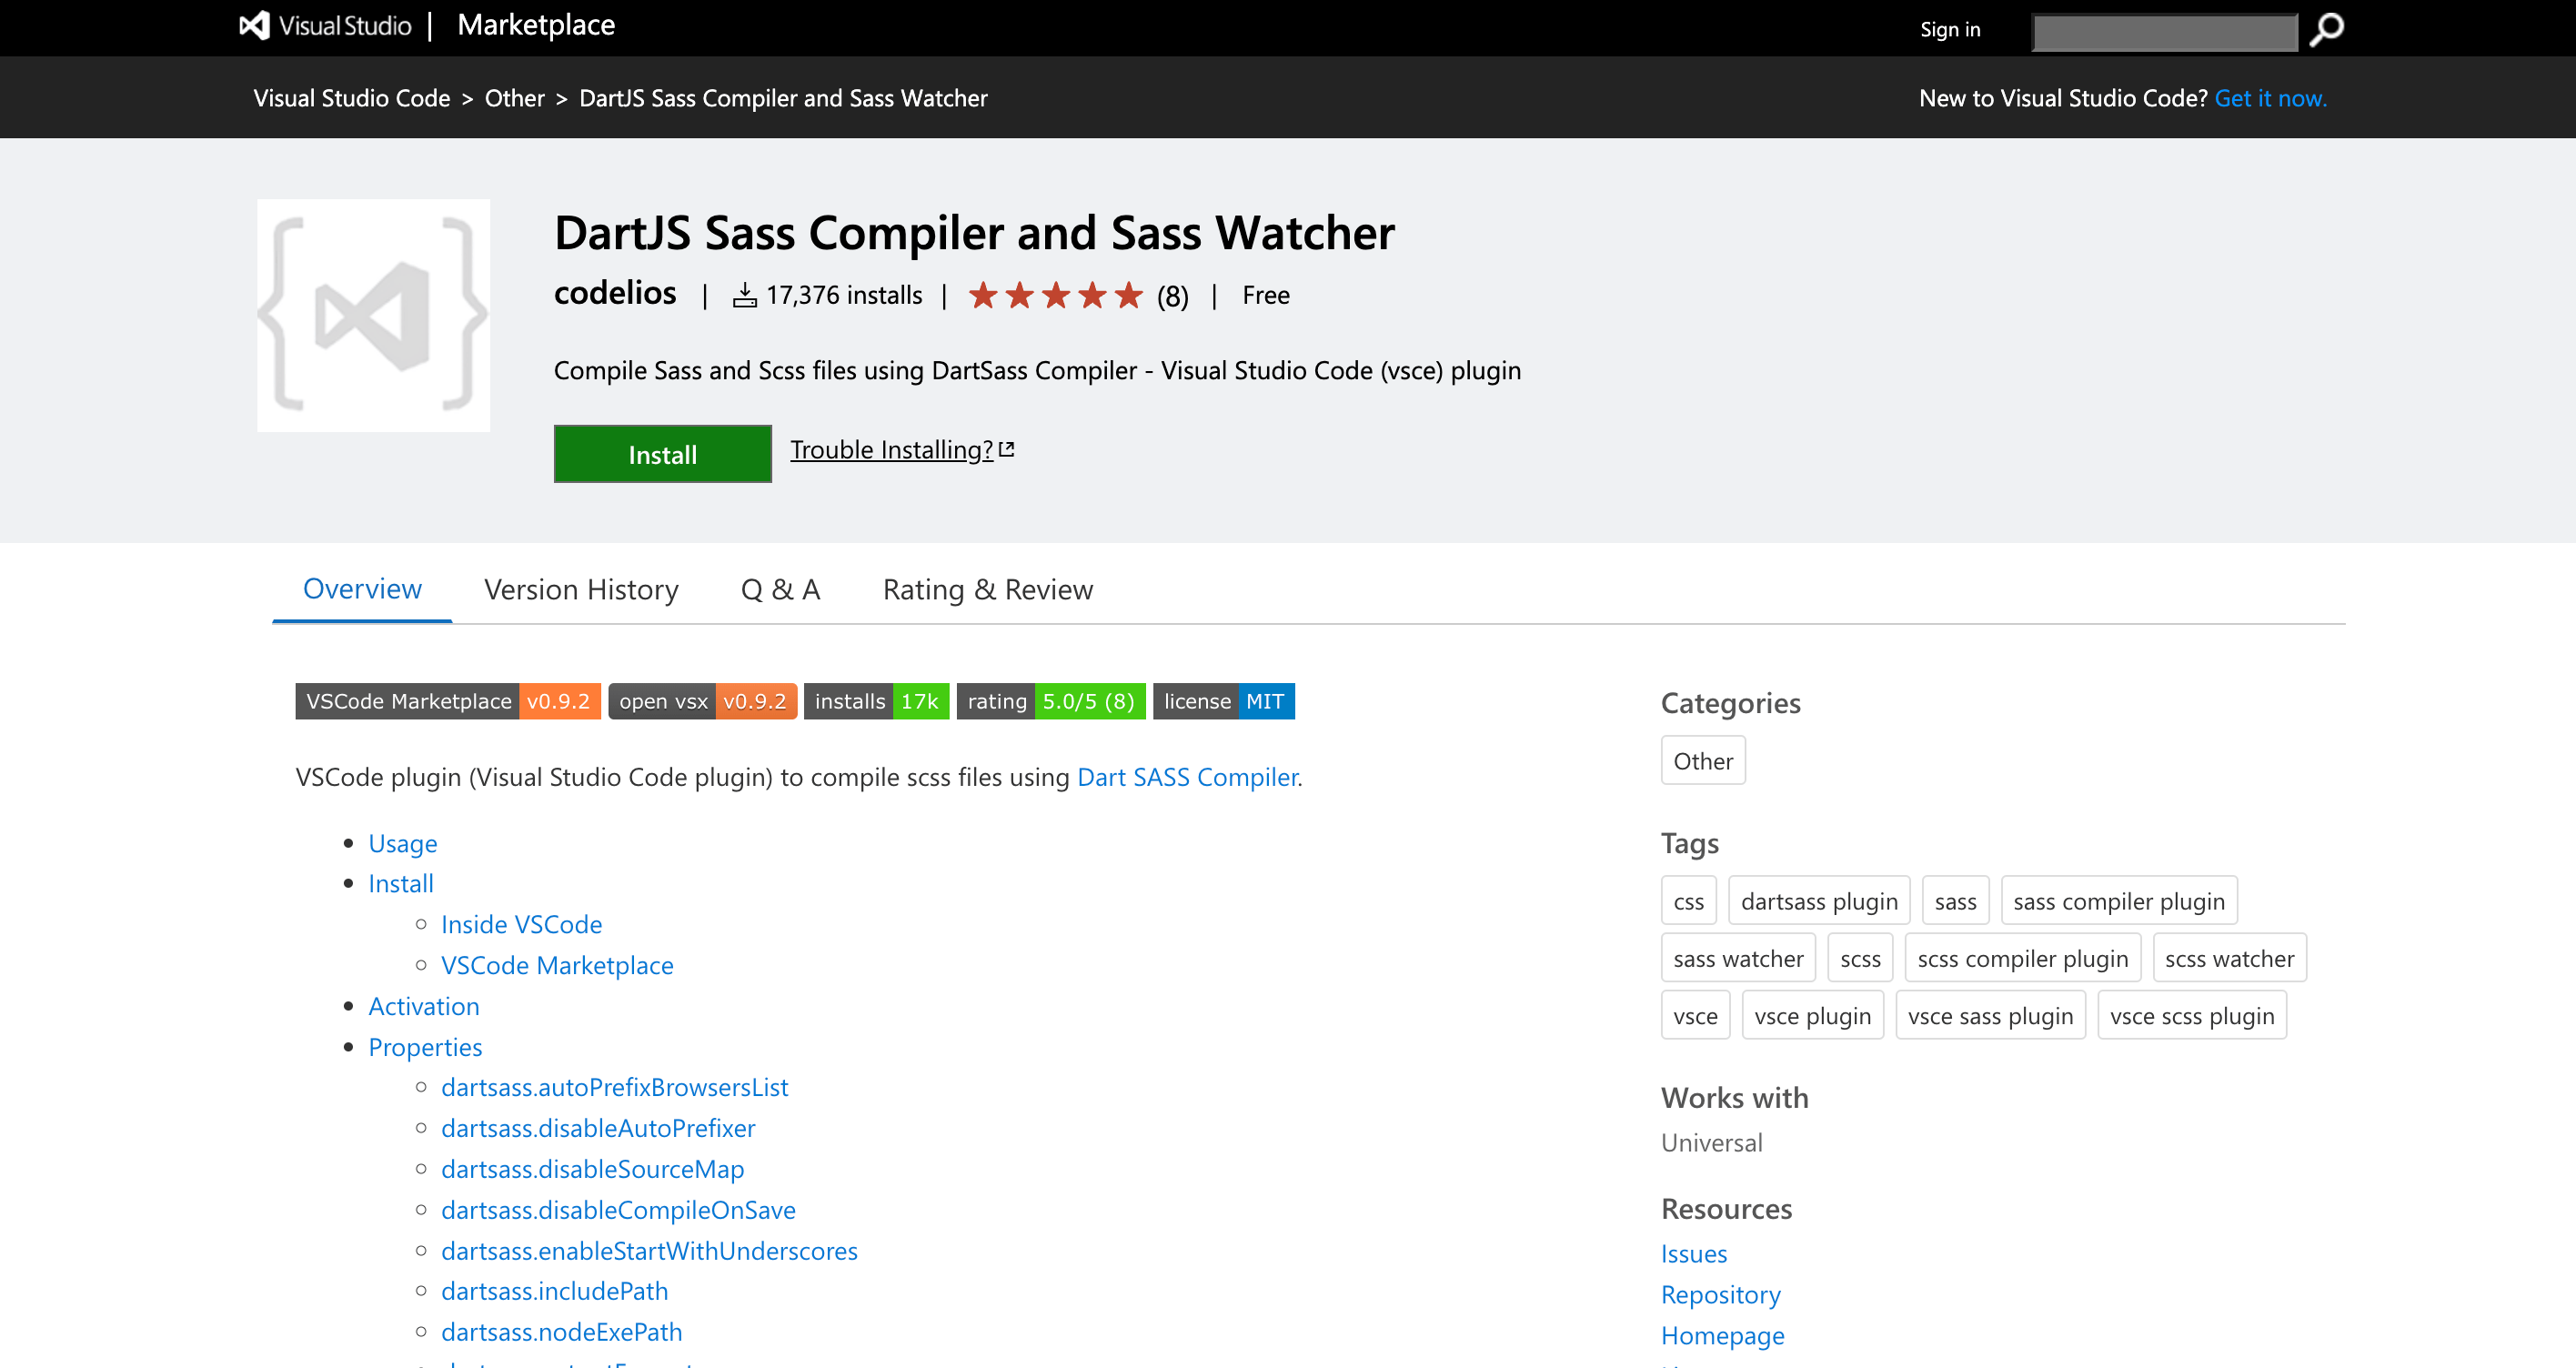 DartJS Sass Compiler and Sass Watcher